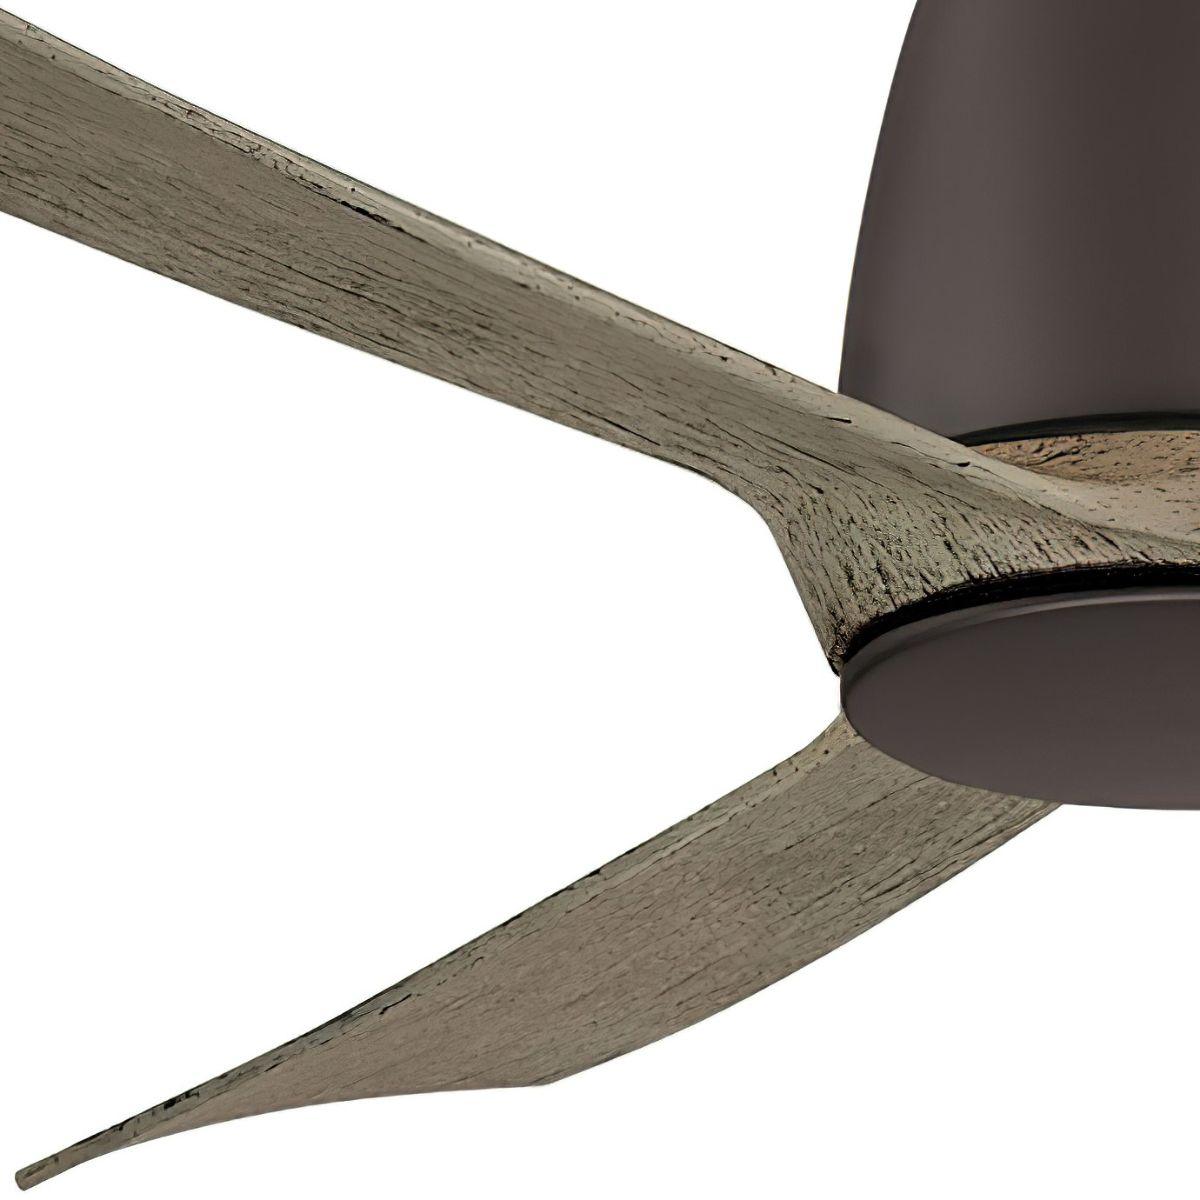 Kute 44 Inch Propeller Indoor/Outdoor Ceiling Fan With Remote, DC Motor